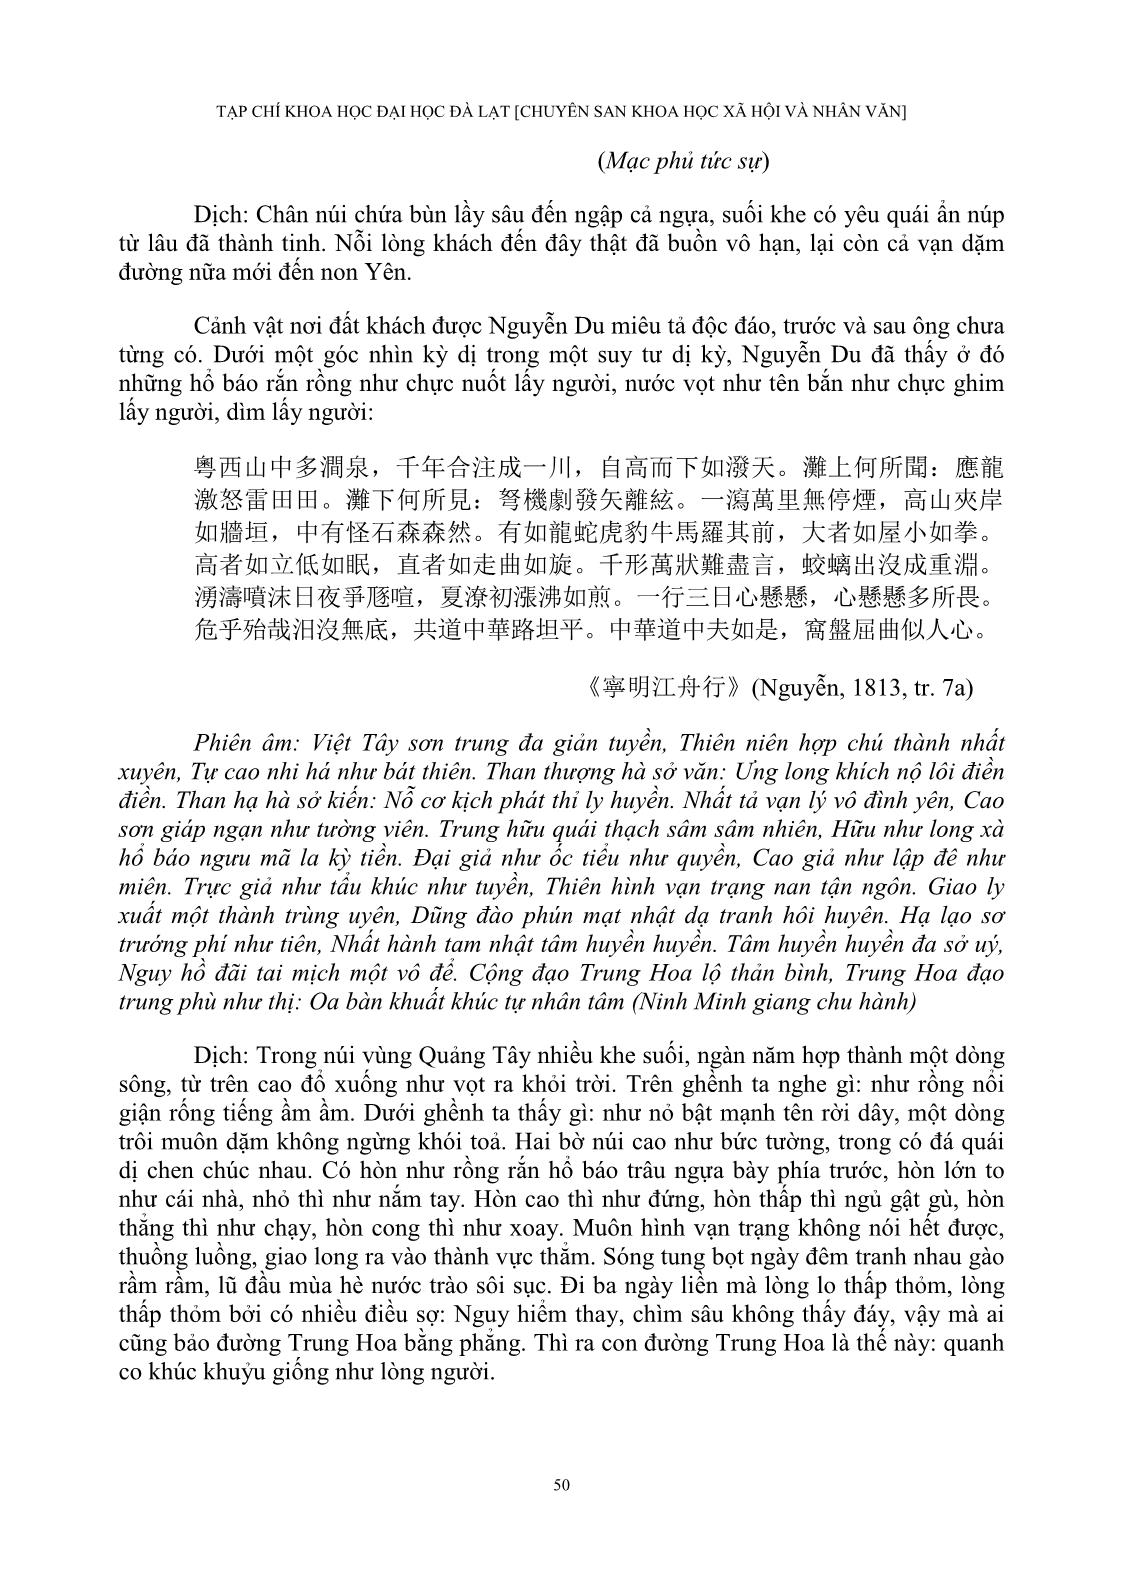 Cảm thức của Nguyễn Du về Trung Quốc Thanh triều trong “Bắc hành tạp lục” trang 8